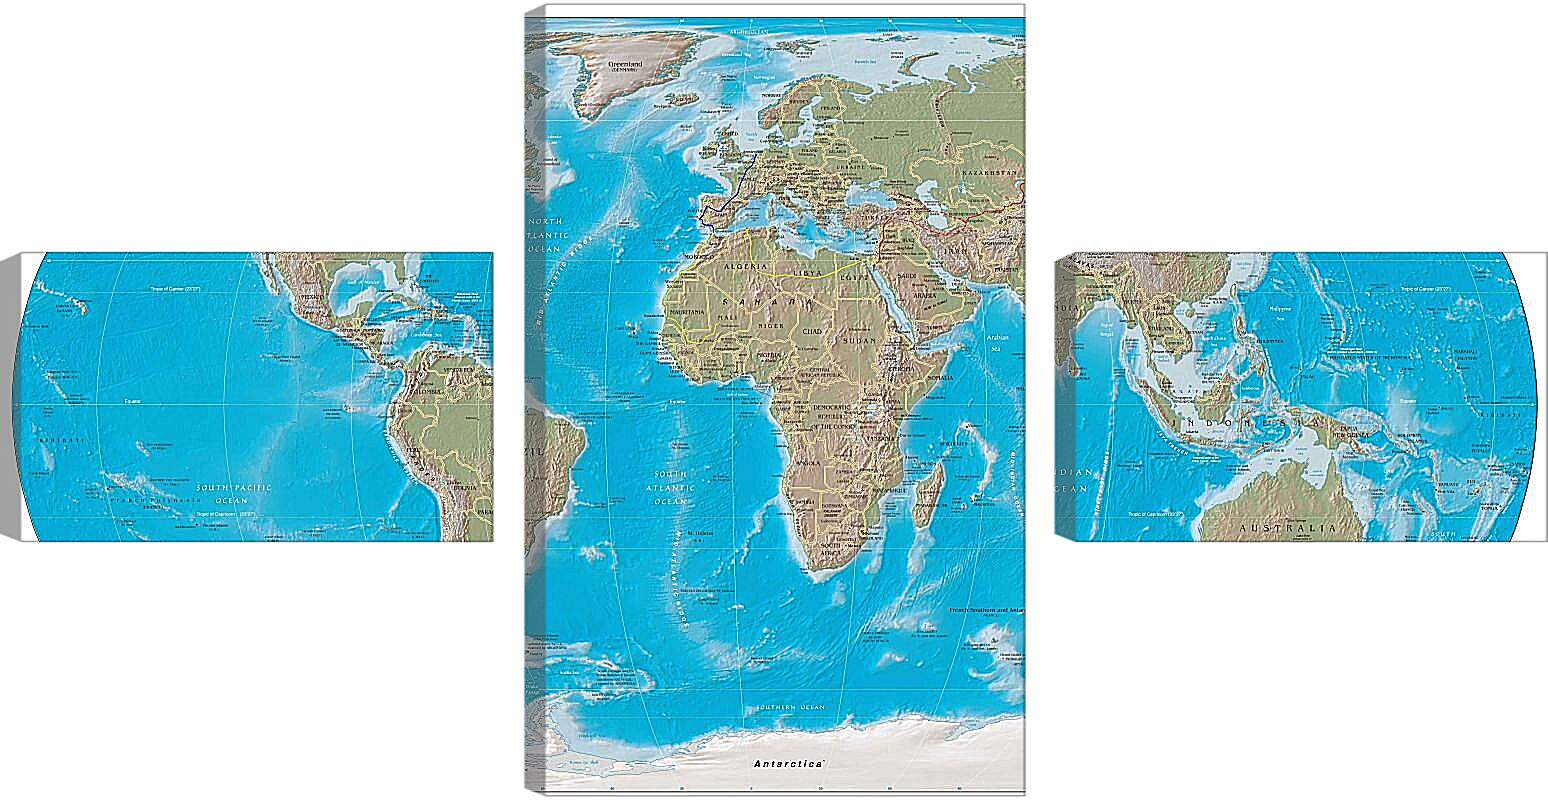 Модульная картина - Физическая карта мира, апрель 2004